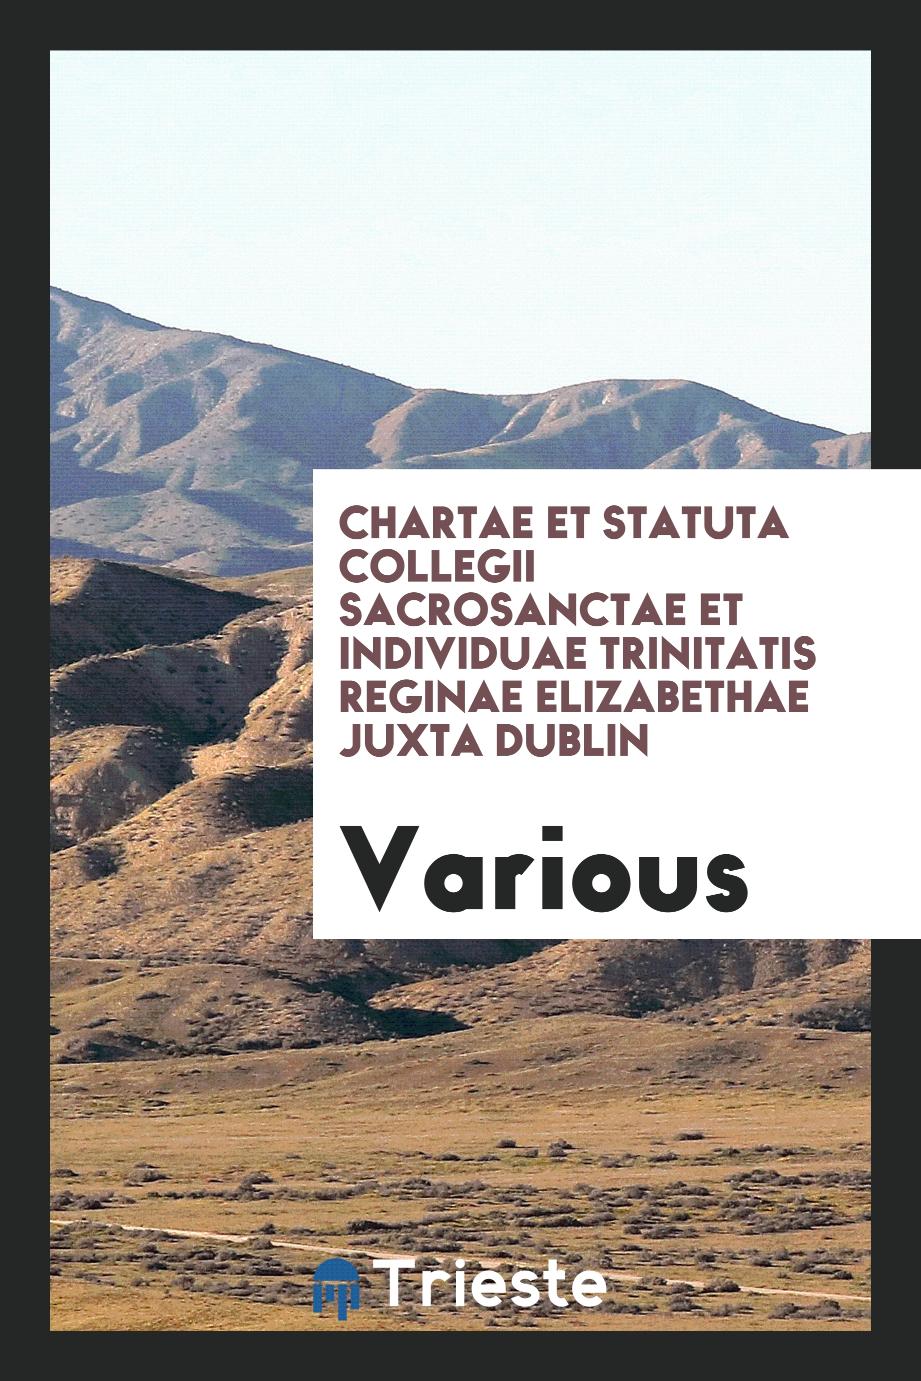 Chartae et statuta Collegii sacrosanctae et individuae Trinitatis reginae Elizabethae juxta Dublin